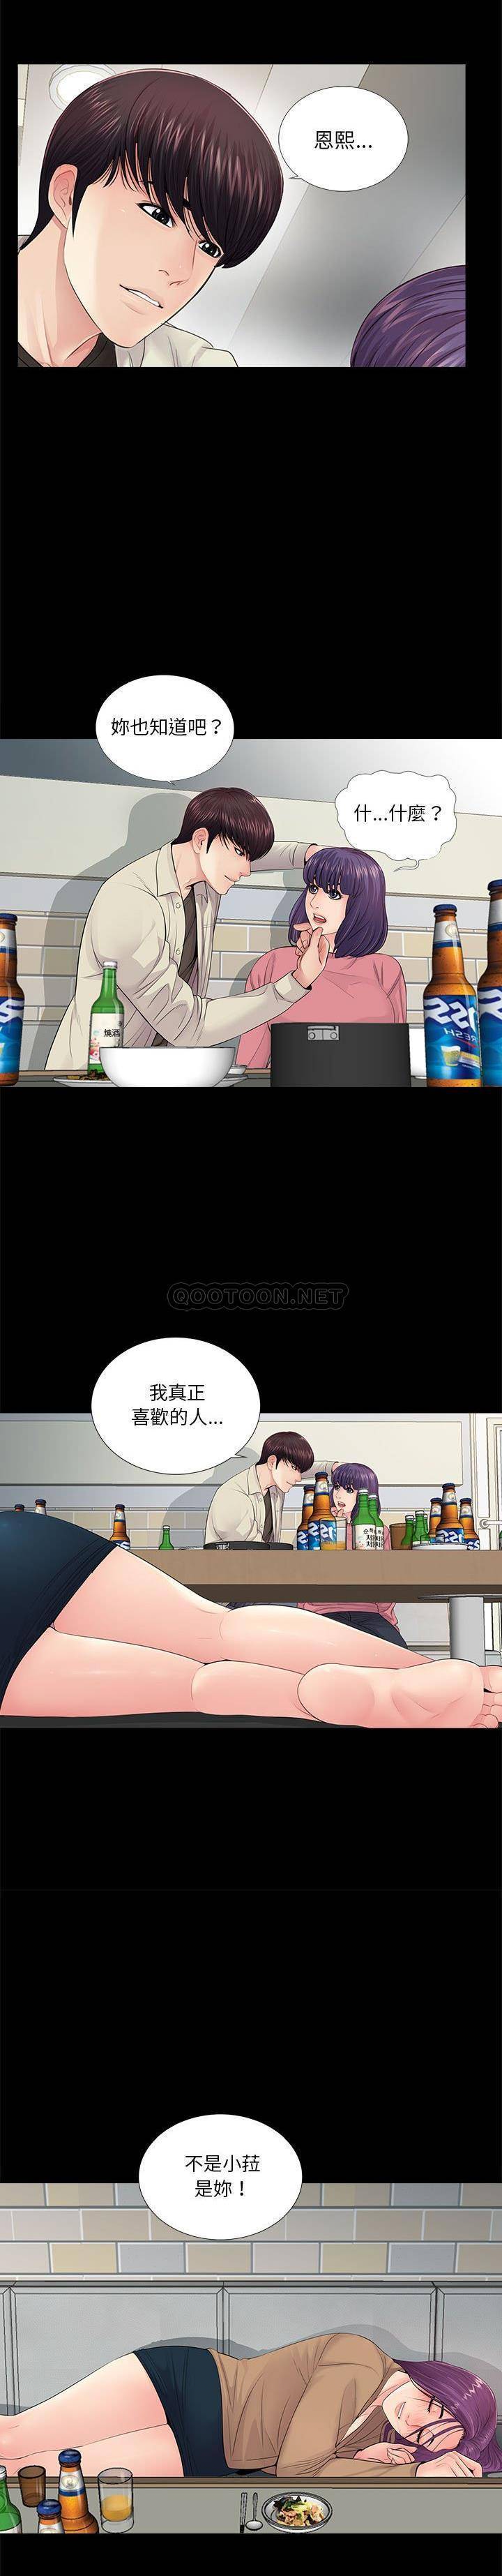 韩国污漫画 神秘復學生 第15话 2